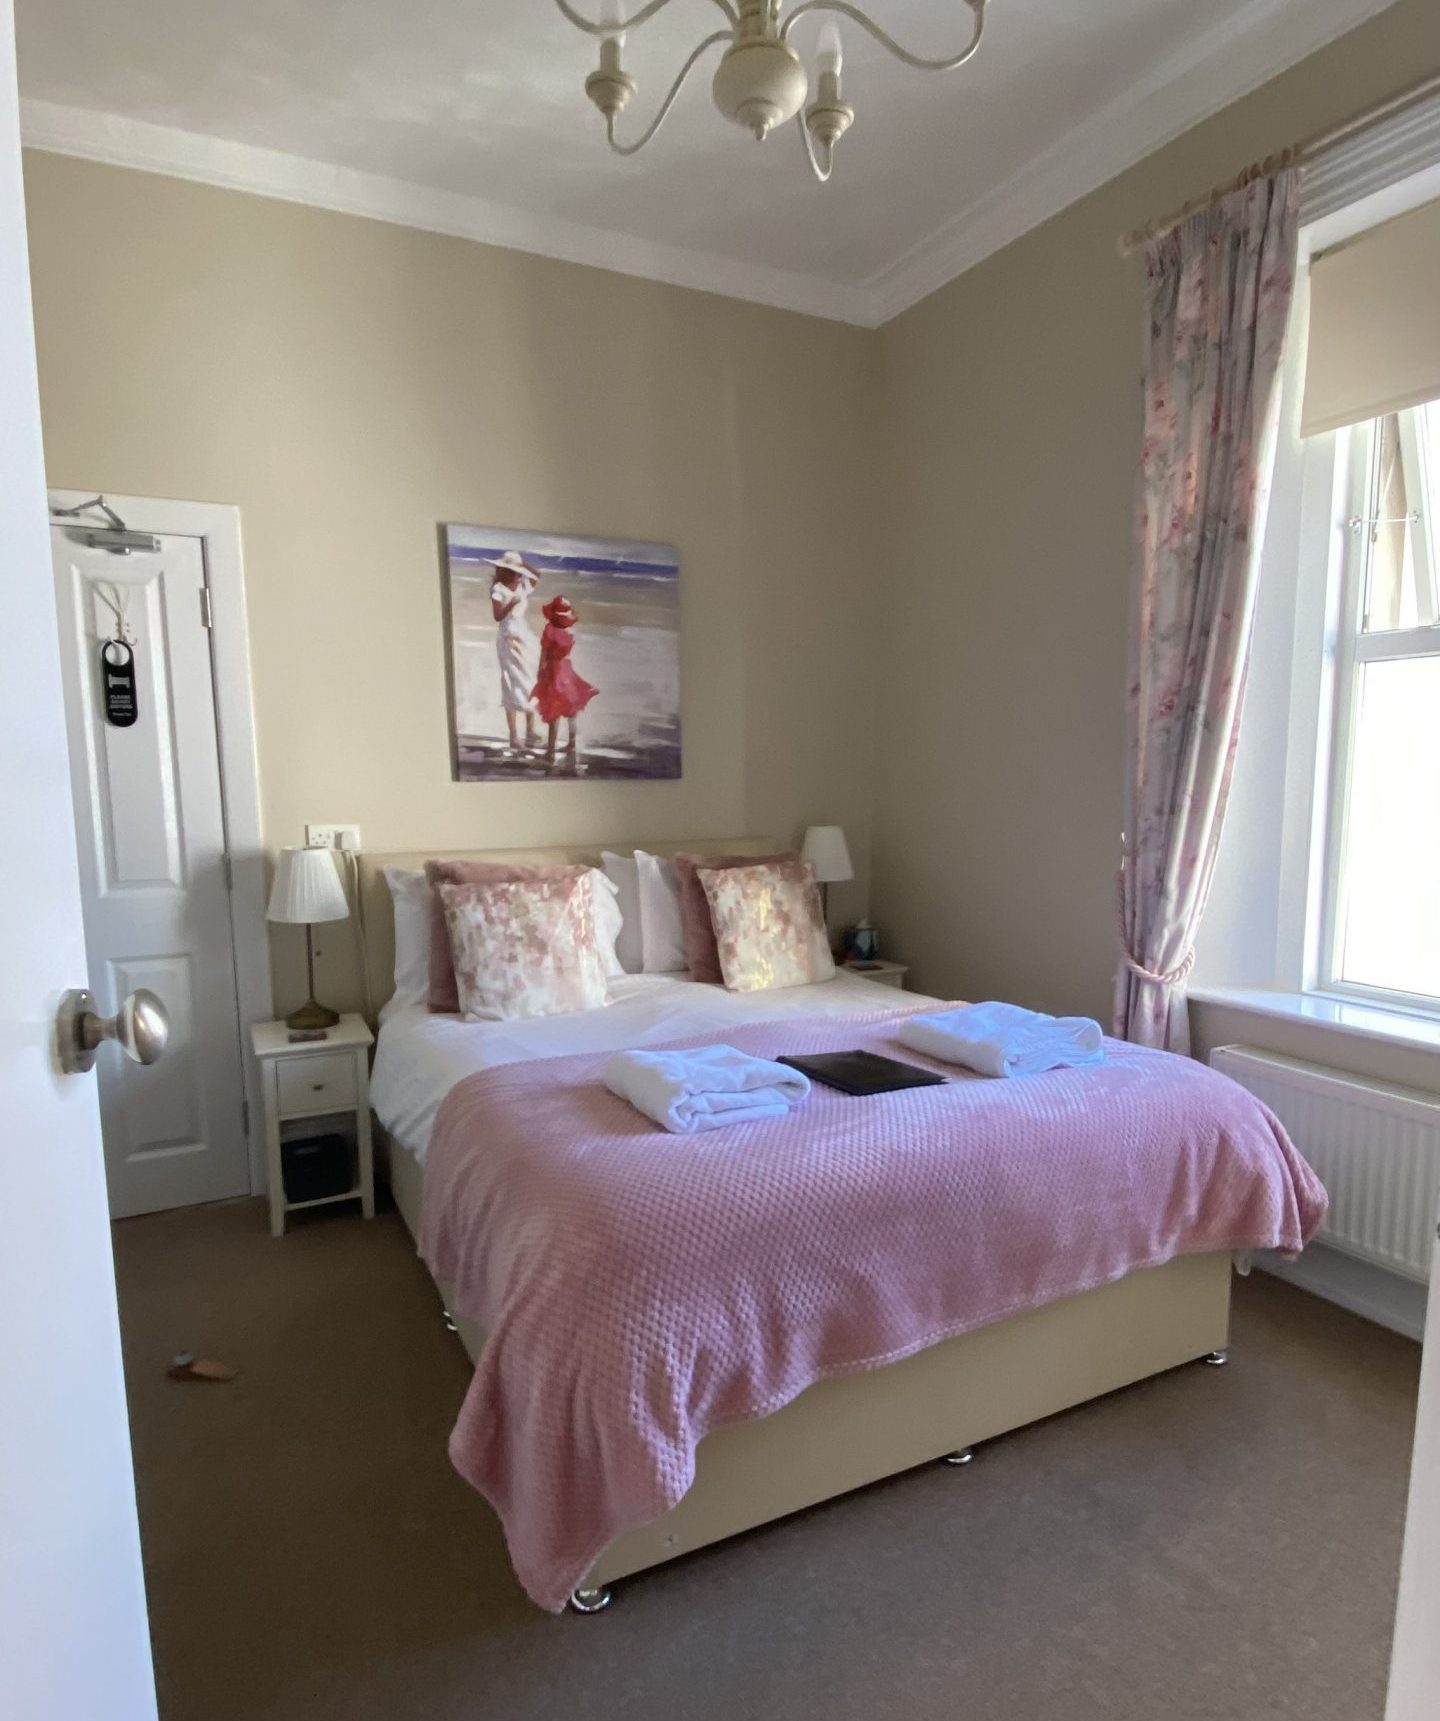 Deluxe King Room (sleeps 2) or Baddesley Suite – sleeps up to 4